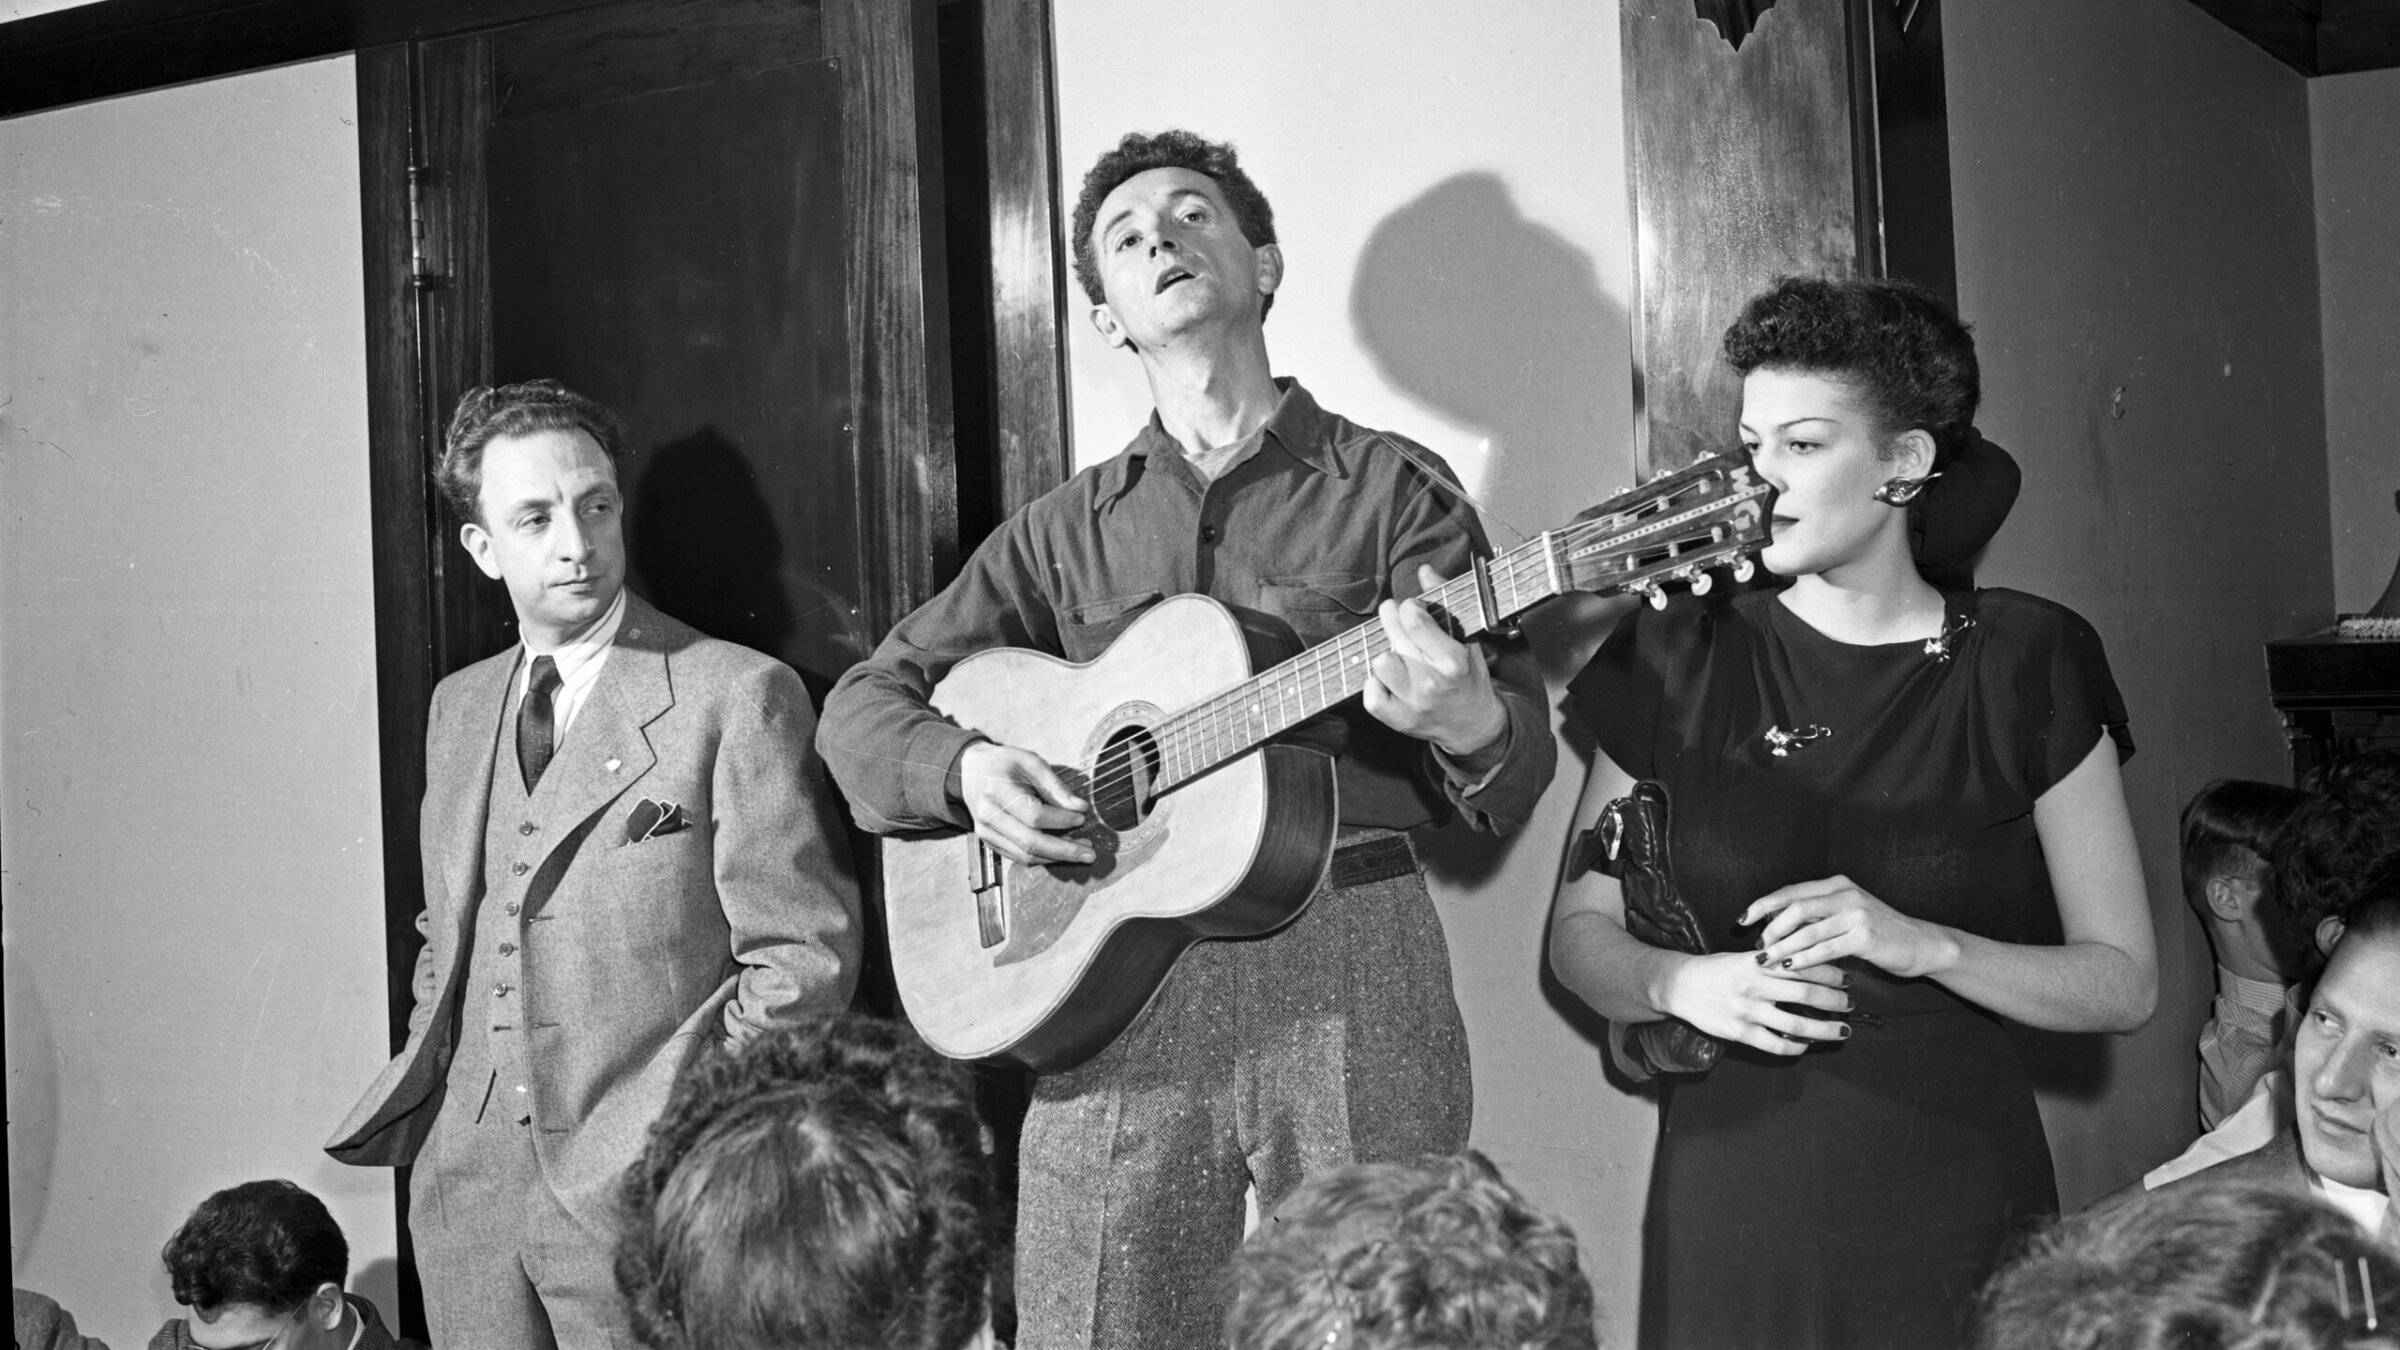 וווּדי גאָטרי באַגלייט זיך מיט דער גיטאַר בעת אַ קאָנצערט אין שיקאַגע, בערך 1940 